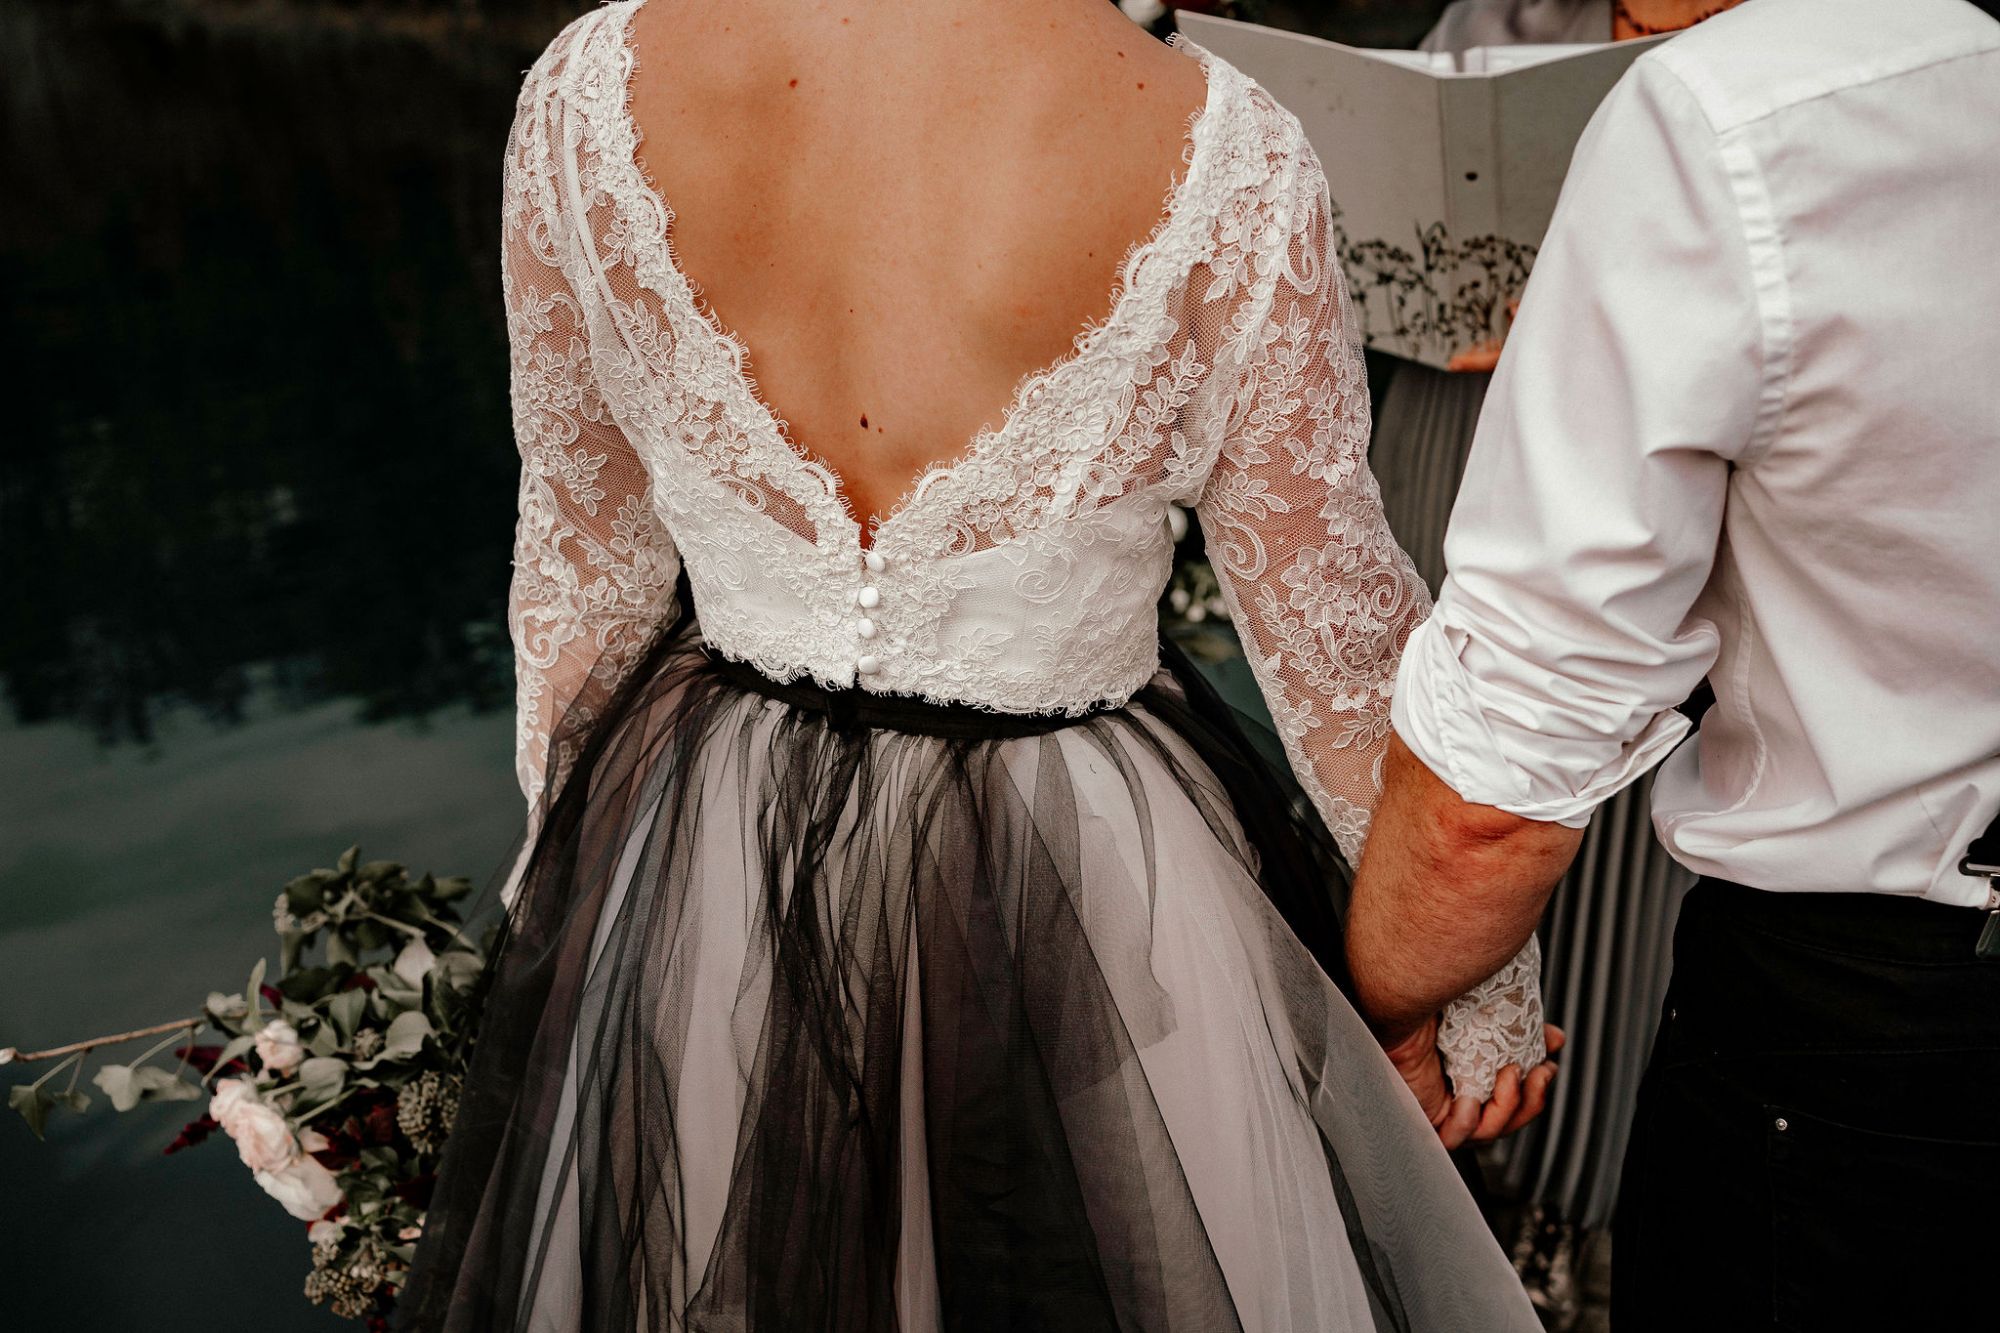 Black tulle alternative wedding dress skirt